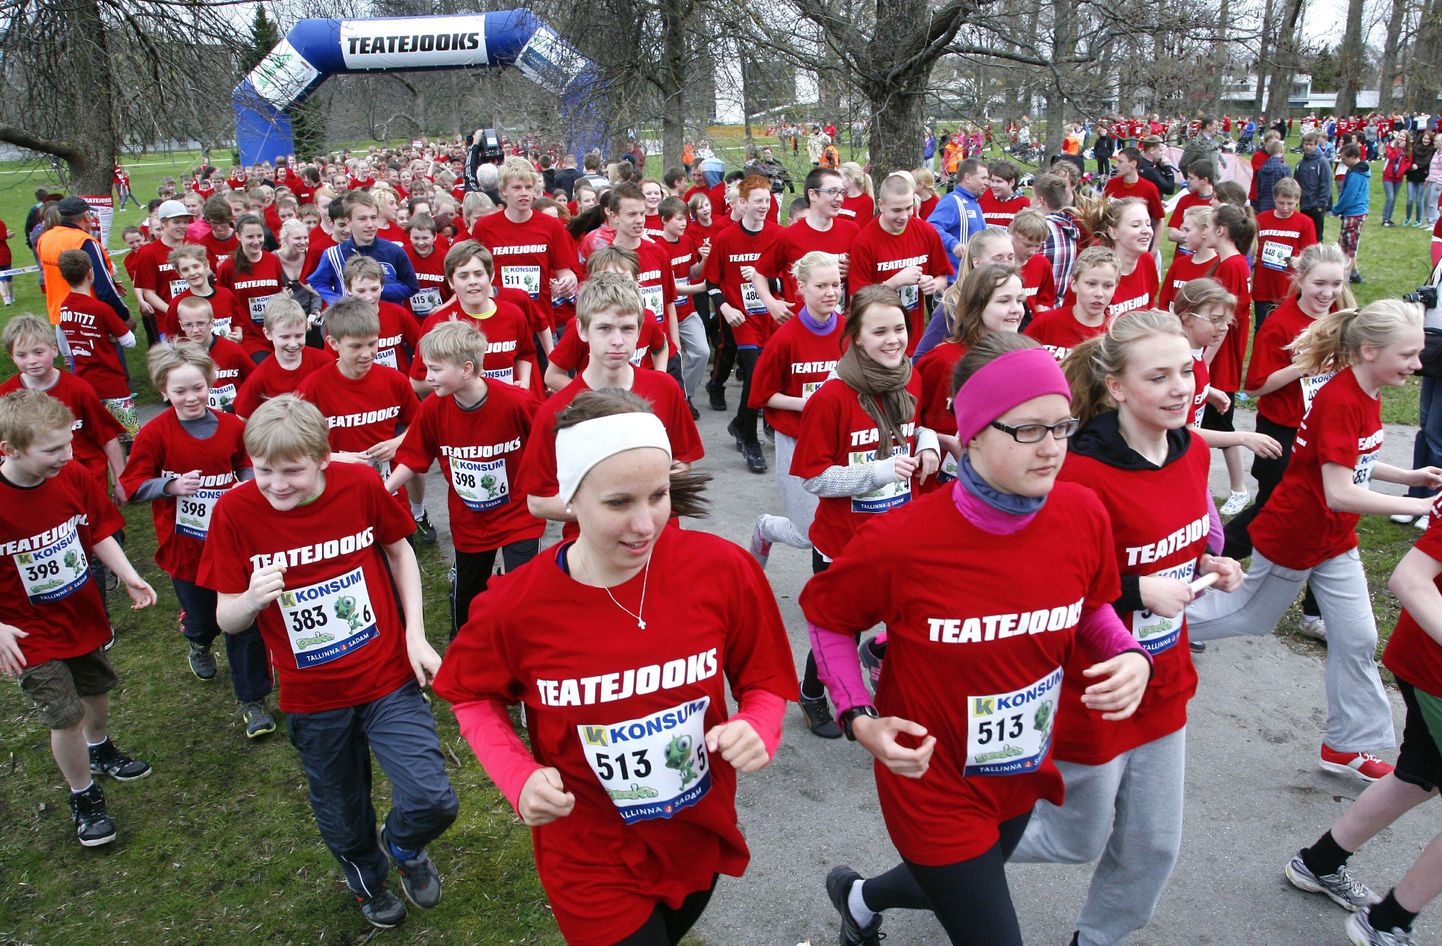 Üle 1000 punastes särkides põhikooliõpilase osales Pärnu rannapargis heategevuslikul teatejooksul.